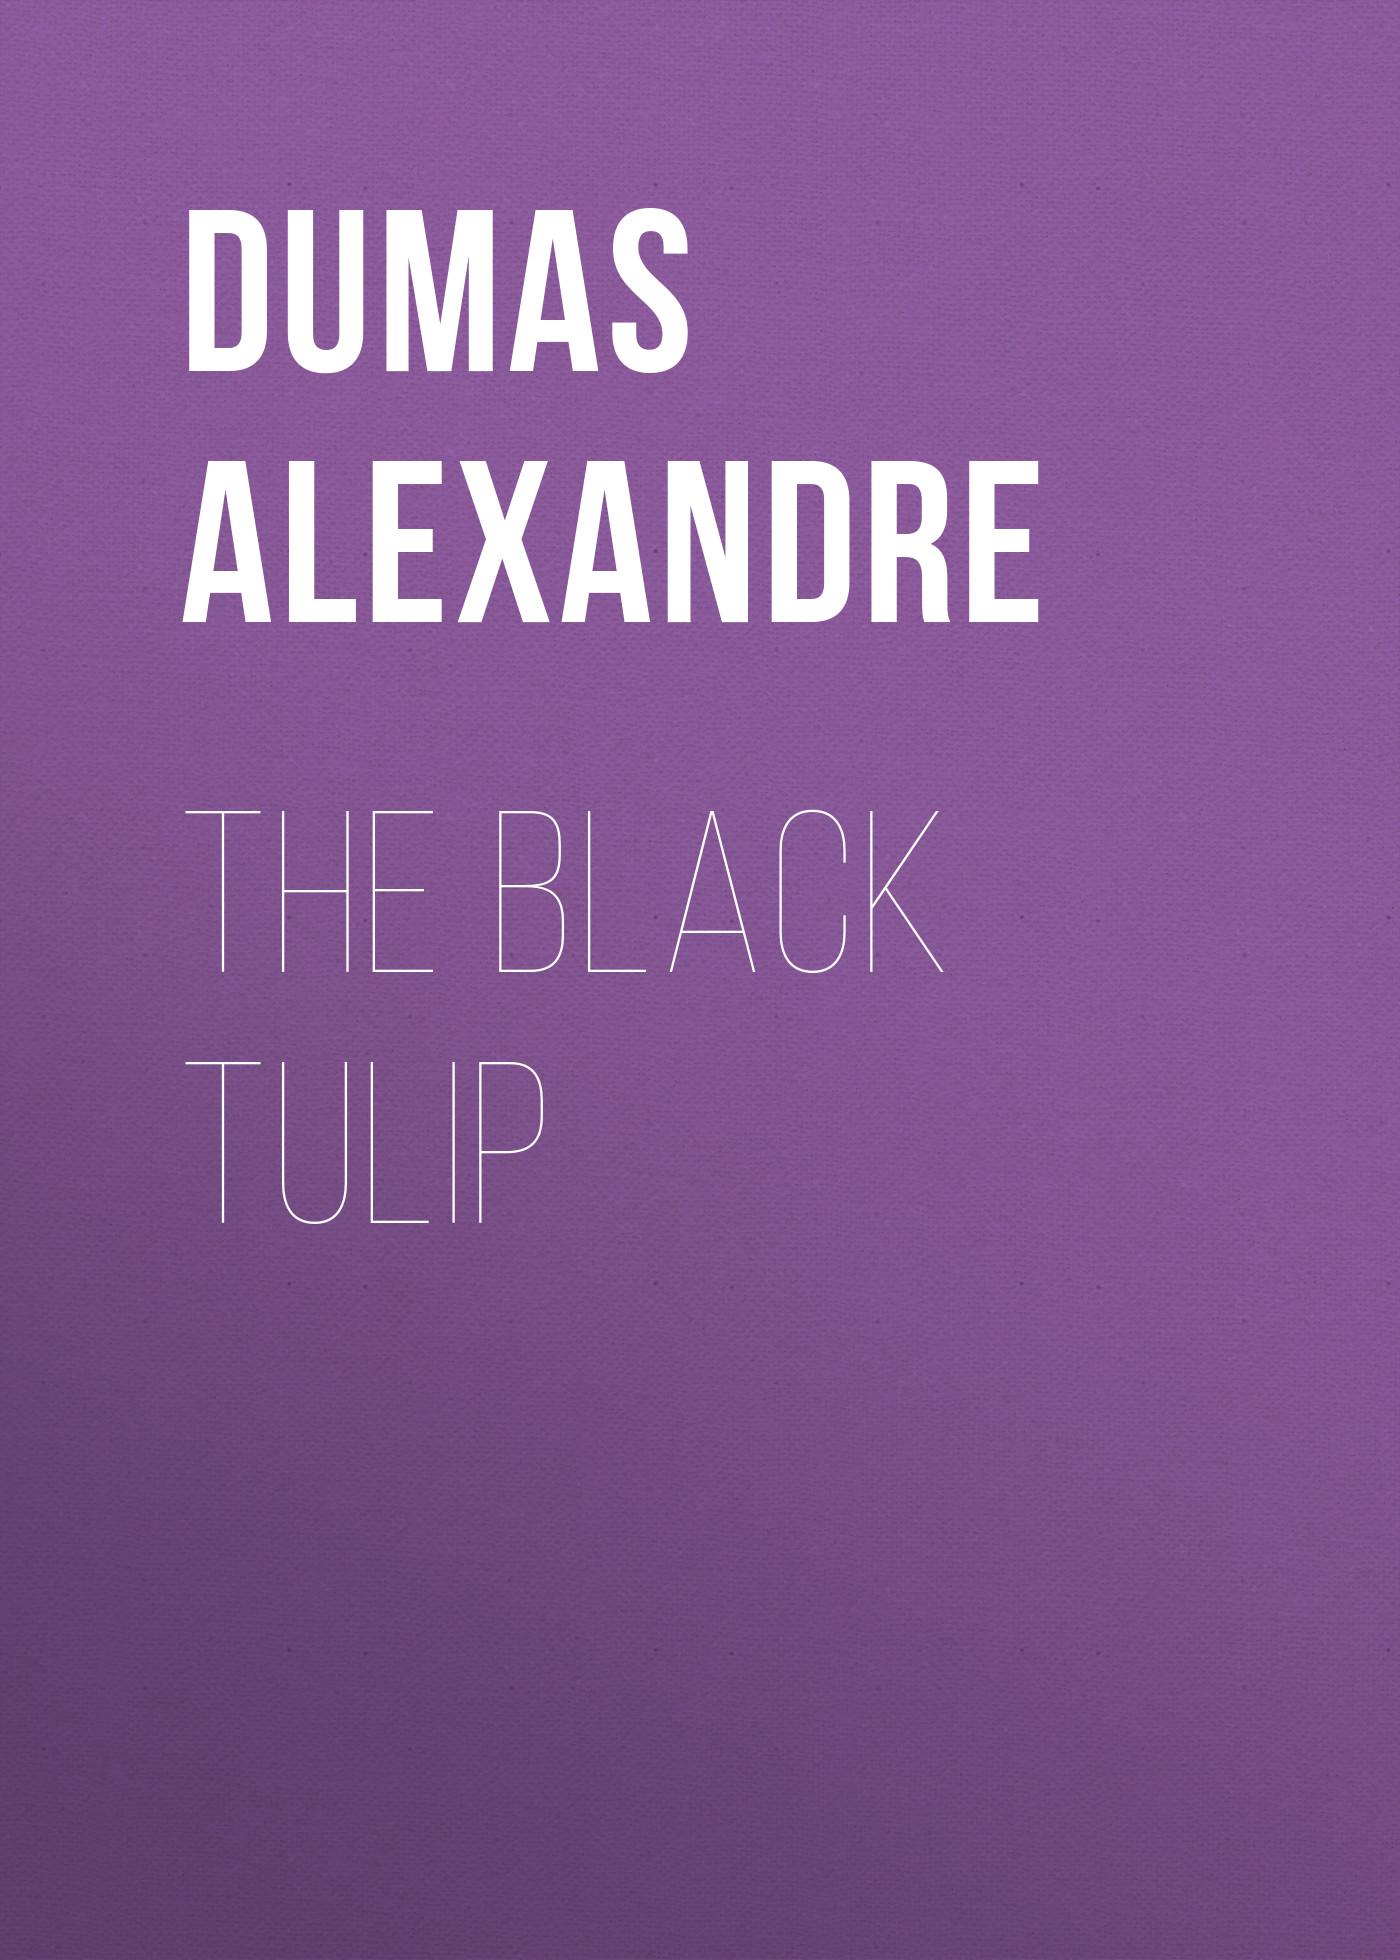 Книга The Black Tulip из серии , созданная Alexandre Dumas, может относится к жанру Литература 19 века, Зарубежная старинная литература, Зарубежная классика. Стоимость электронной книги The Black Tulip с идентификатором 25202599 составляет 0 руб.